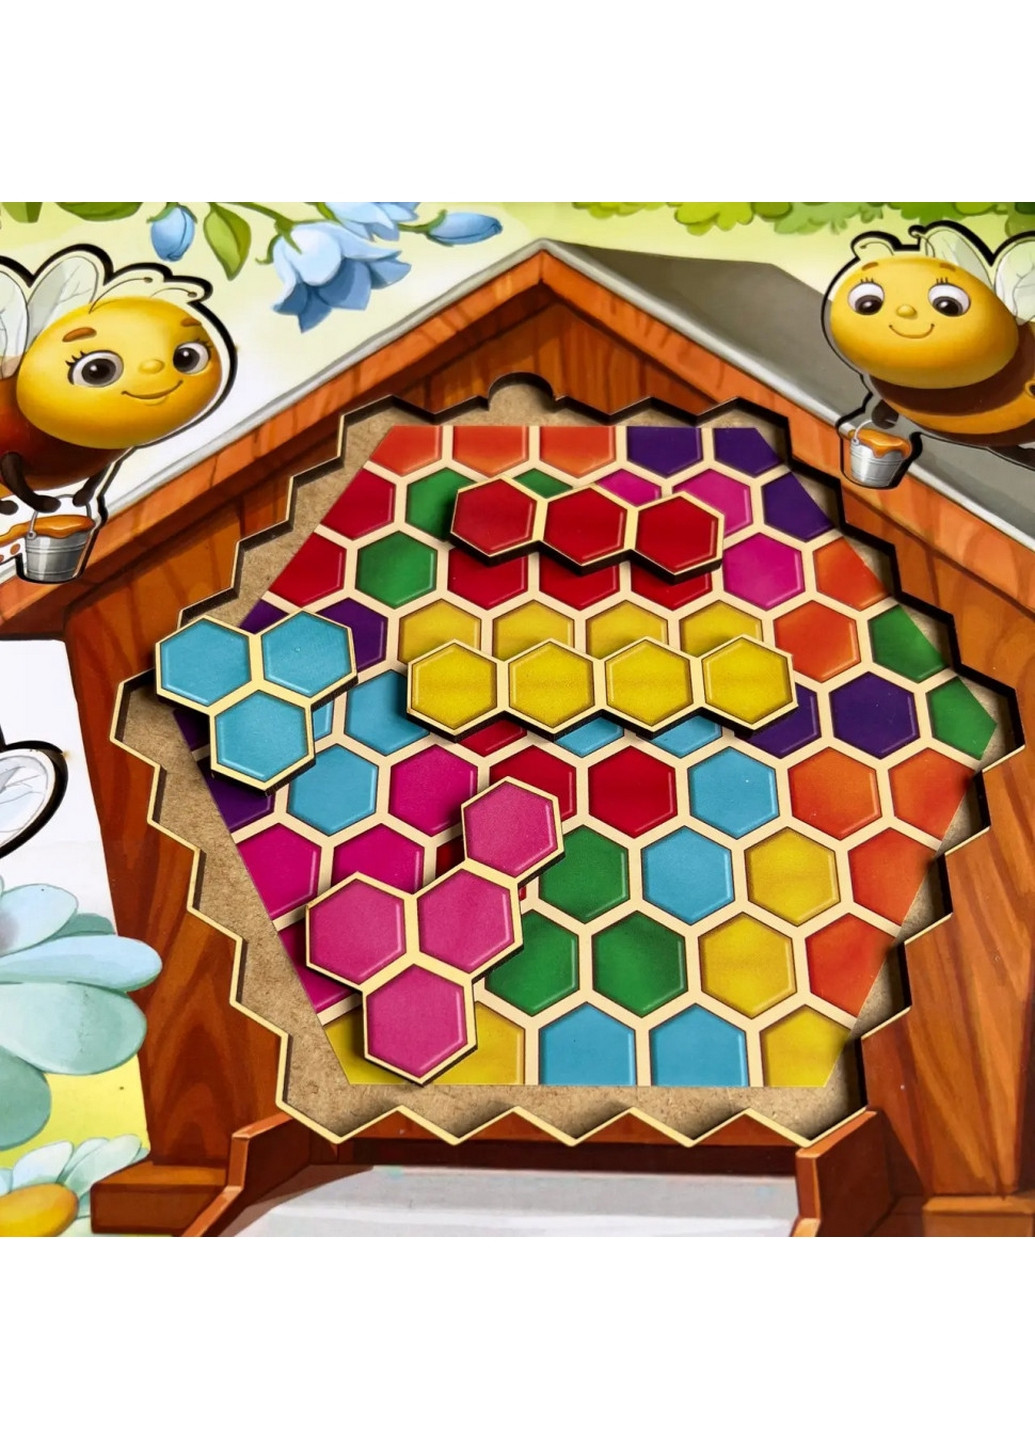 Дерев'яний пазл-вкладиш "Веселі бджілки" сортер-тетрис 1х31х23 см Ubumblebees (260513816)